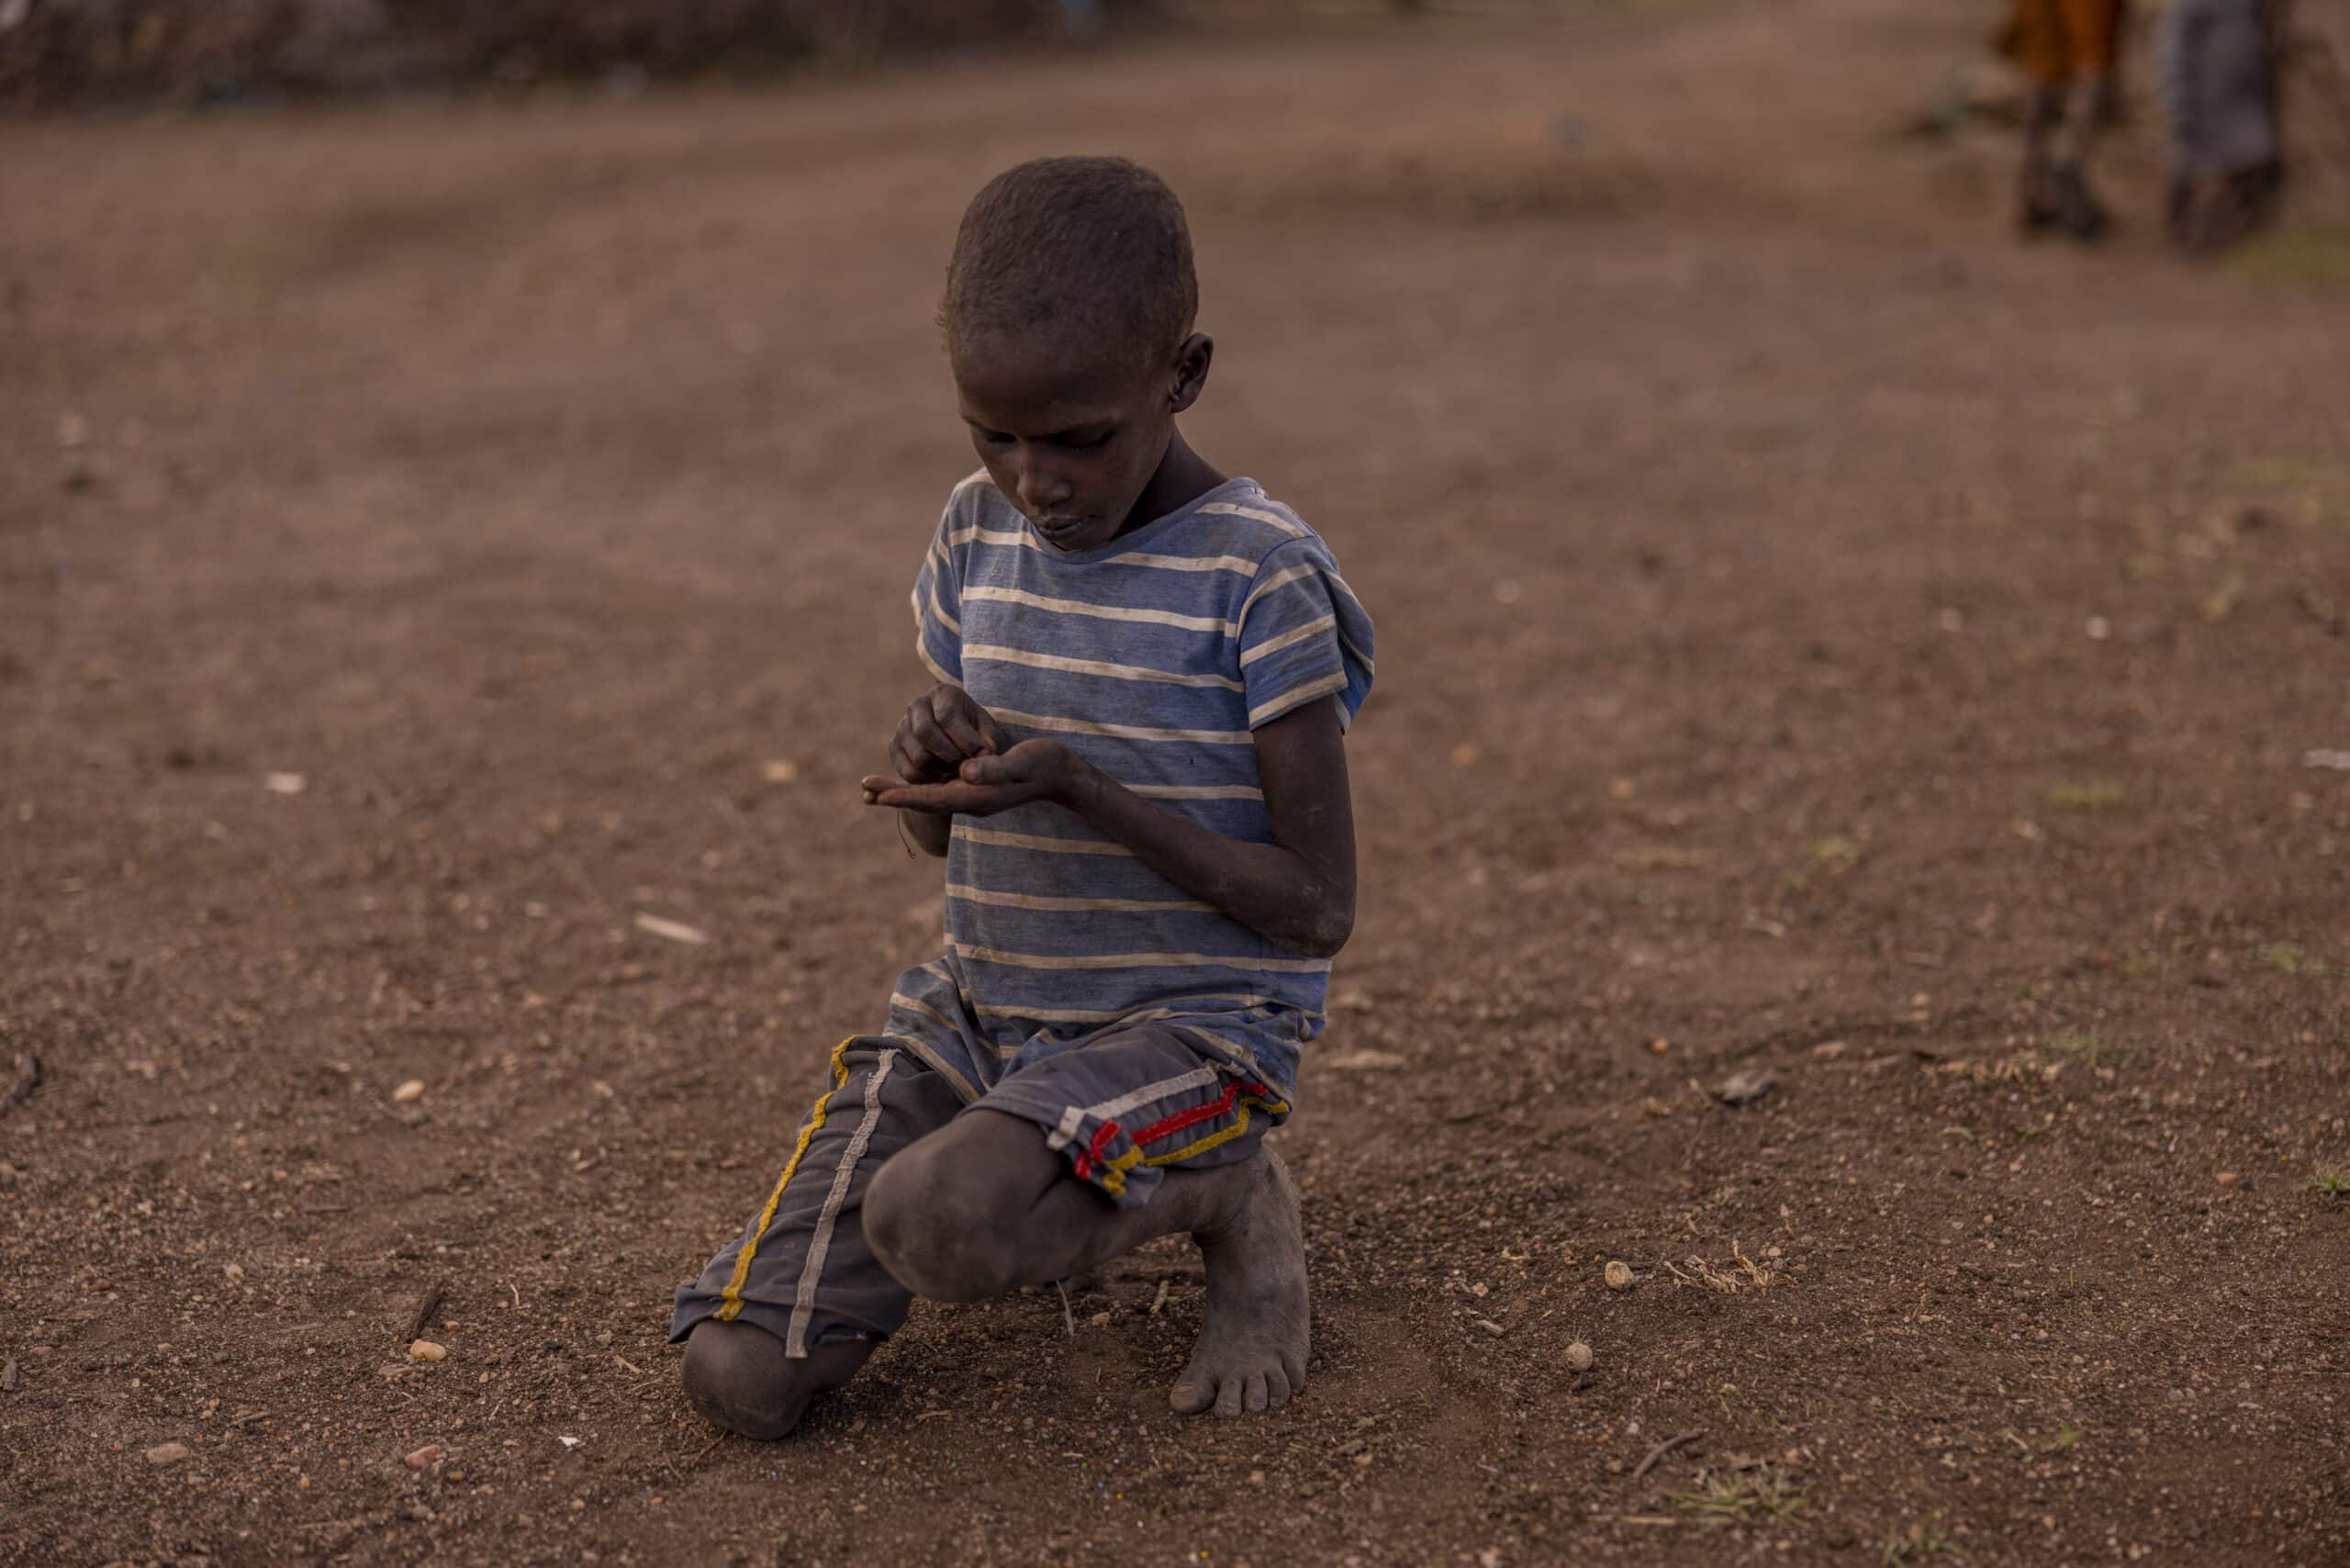 Ein kleiner Junge in gestreiftem Hemd und Shorts kniet auf einem staubigen Boden und konzentriert sich auf ein Smartphone, das er in seinen Händen hält. © Fotografie Tomas Rodriguez